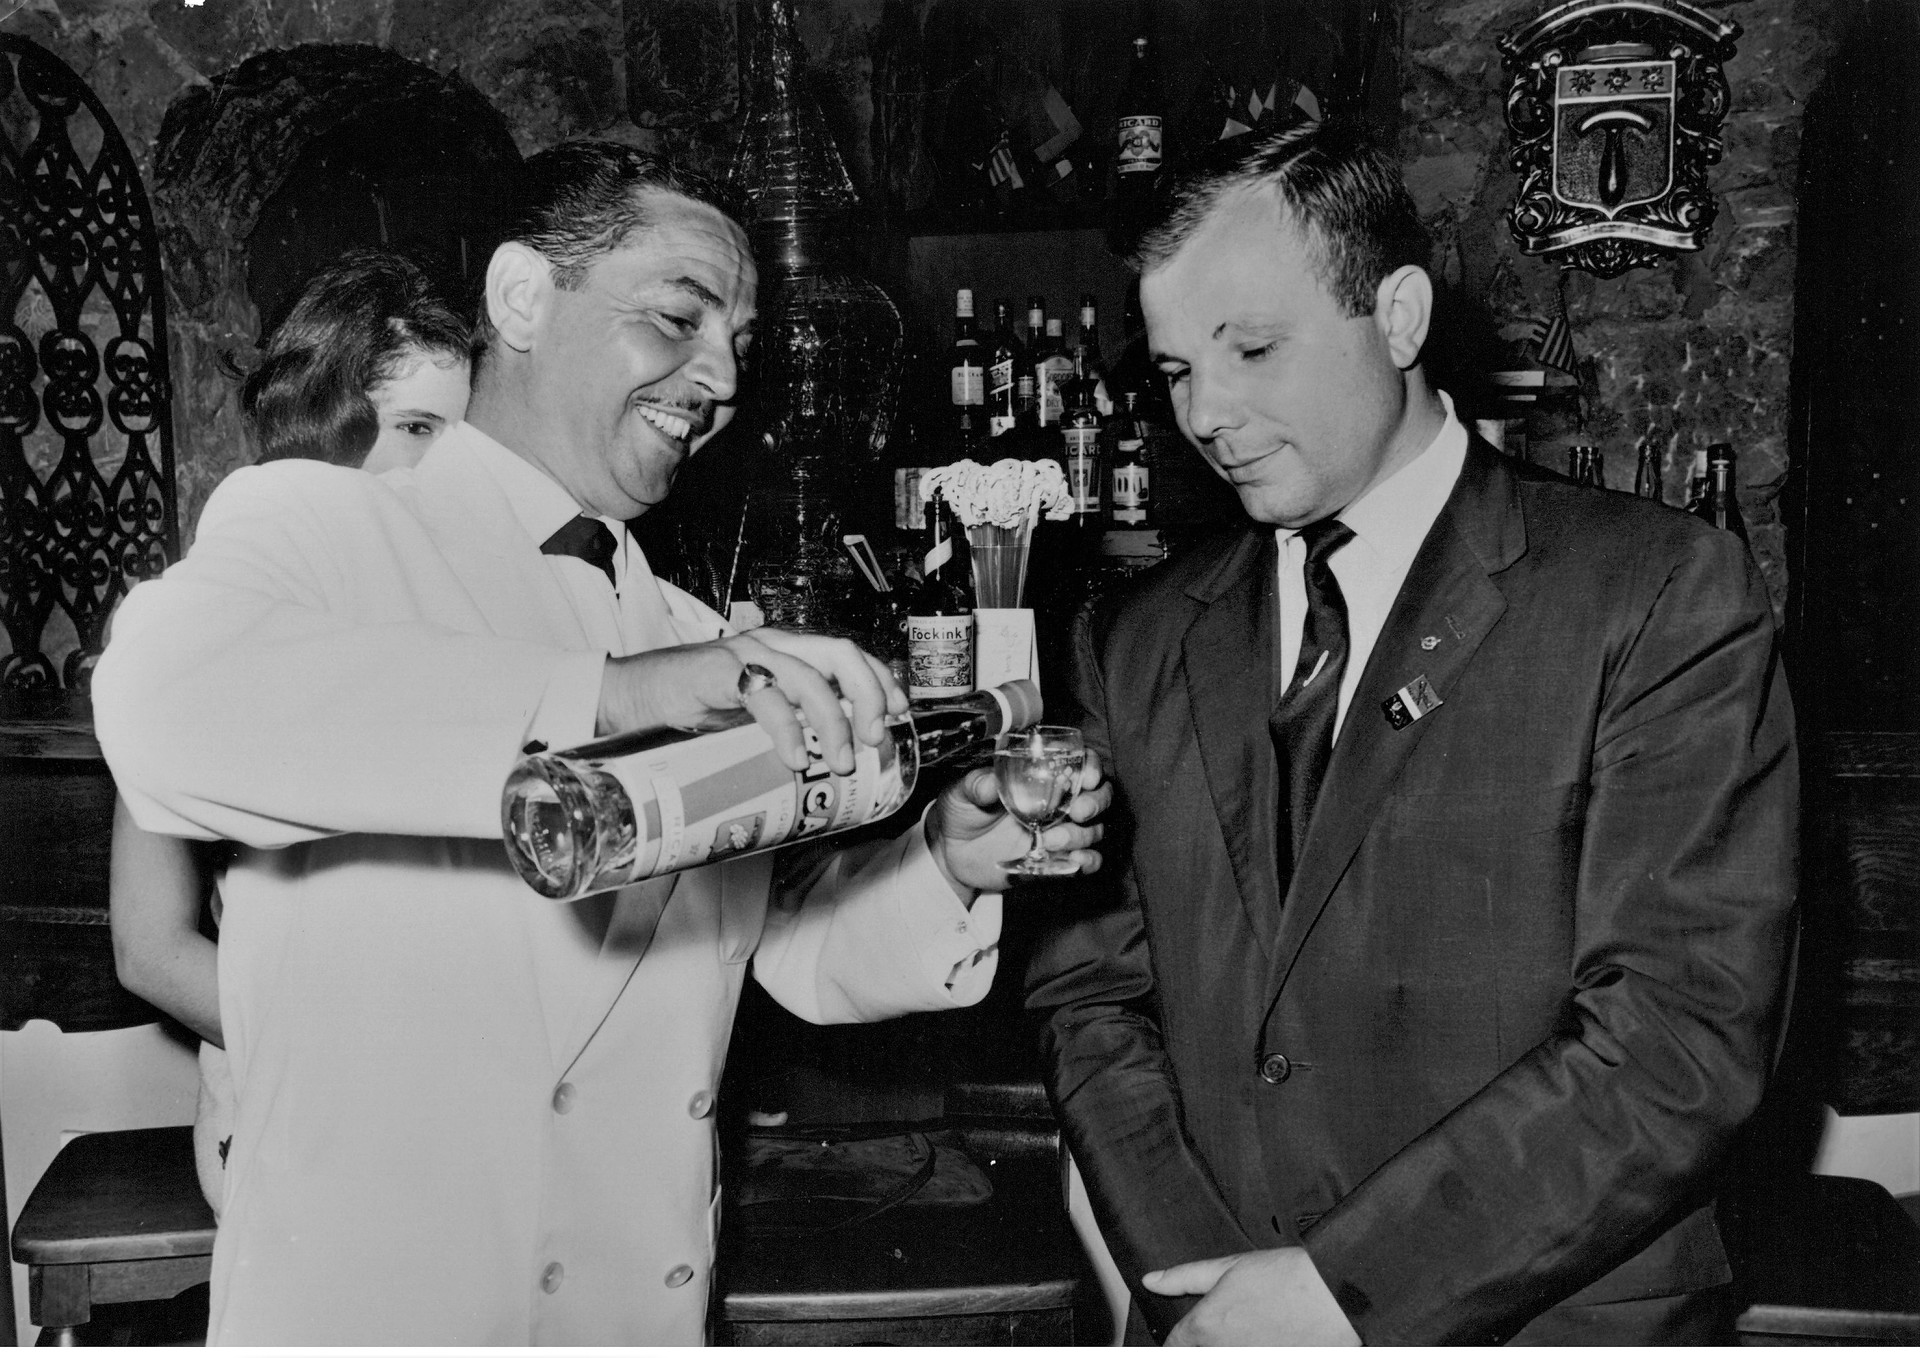 Gagarine prêt à déguster un pastis Ricard que le serveur est en train de lui
verser dans un verre. La photo est prise  dans le bar de l'hôtel Delos de l'île de Bendor